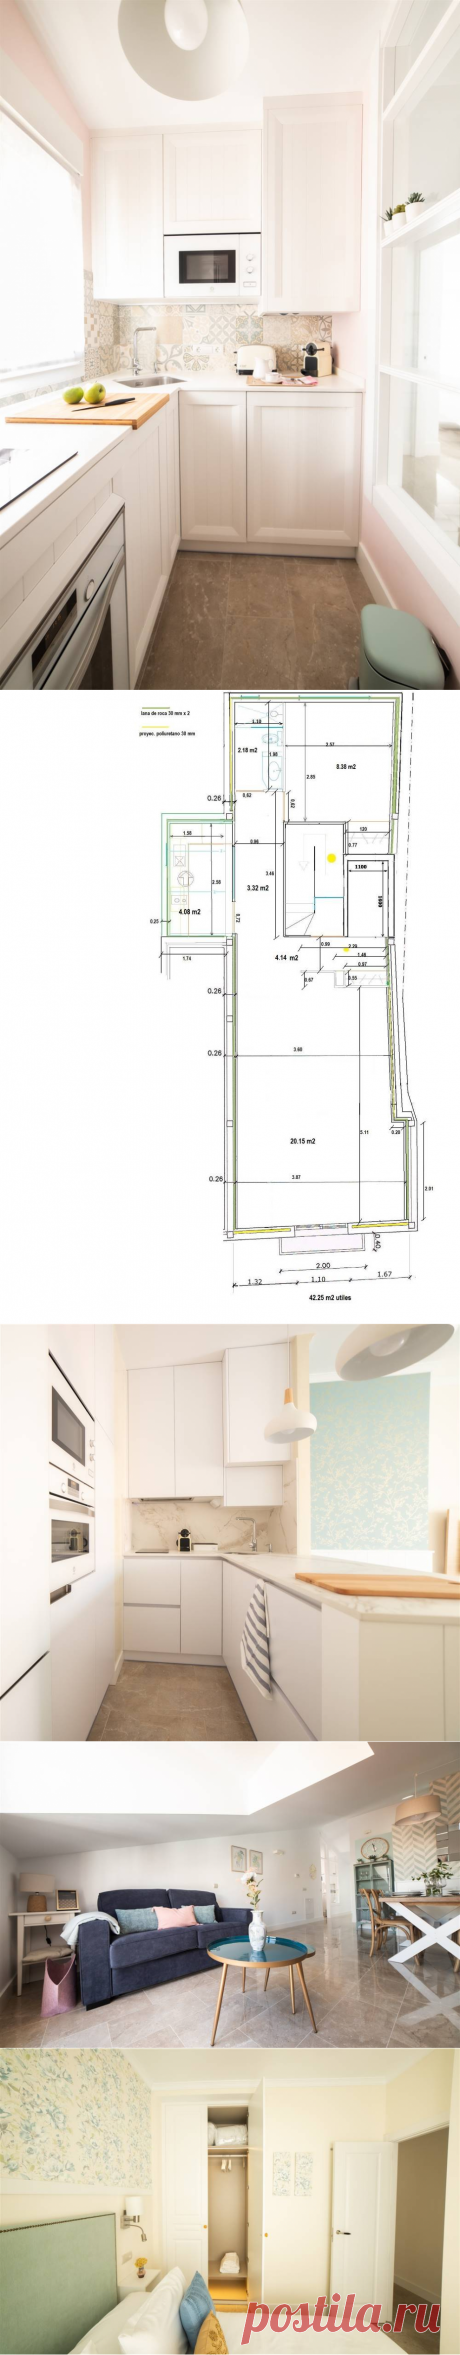 Casas de lectoras: los mini apartamentos de 40 m2 de Isabel (con plano)